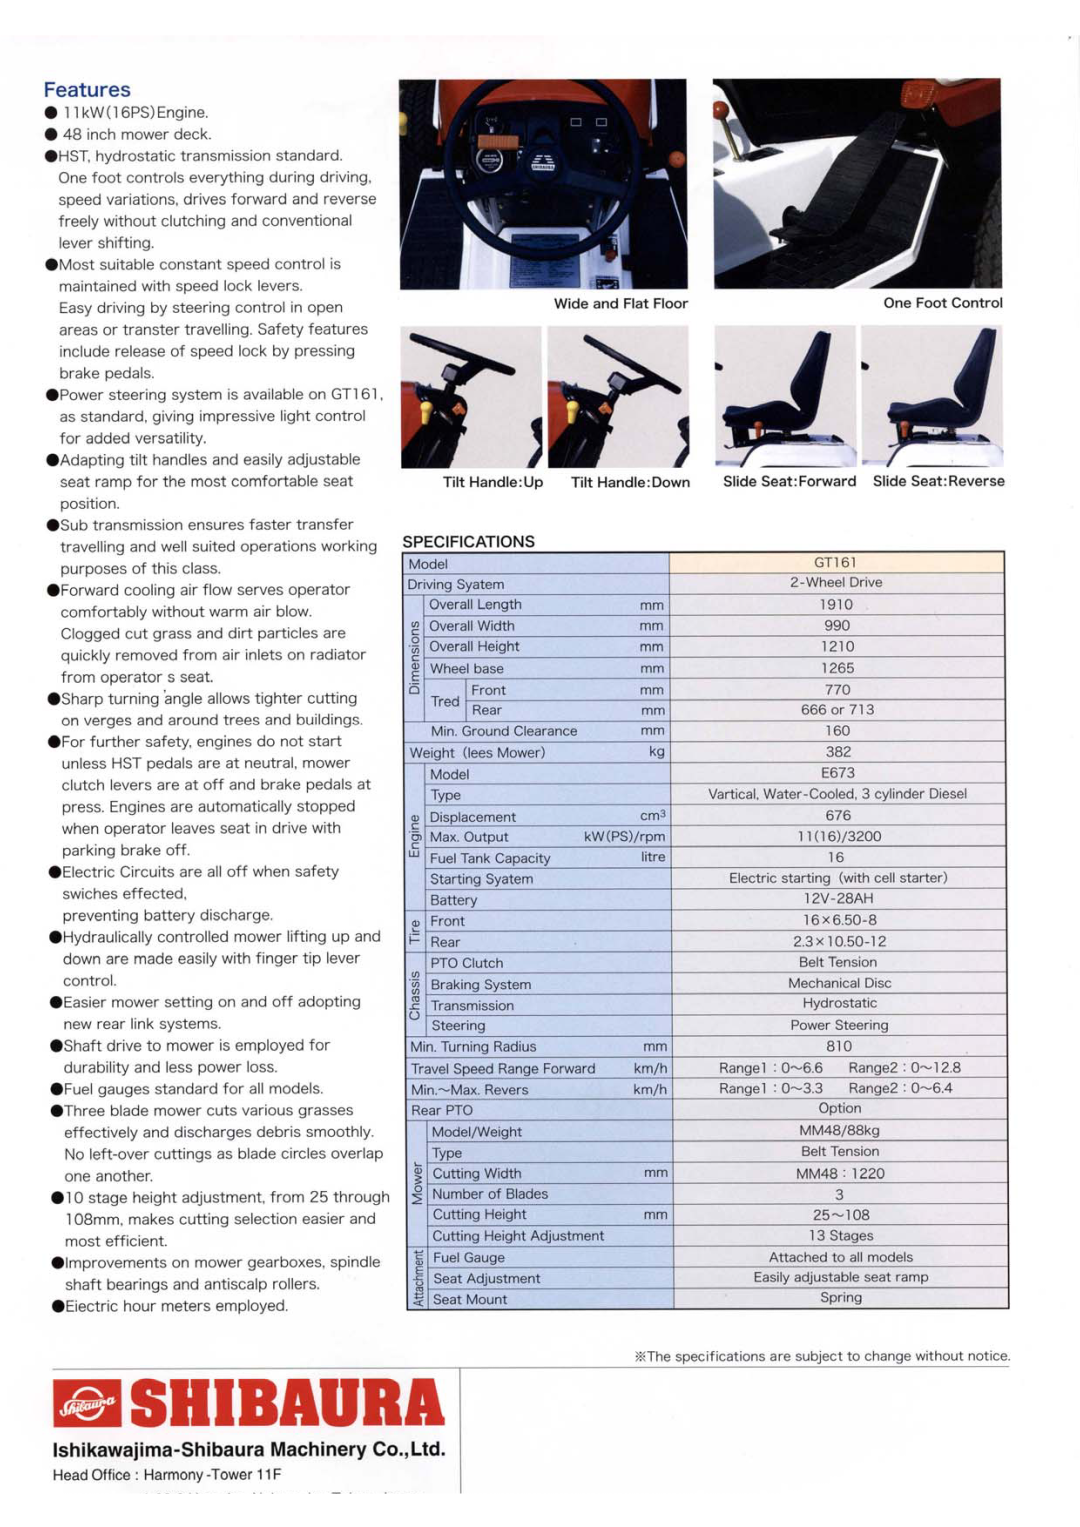 Shibaura GT161 manual 